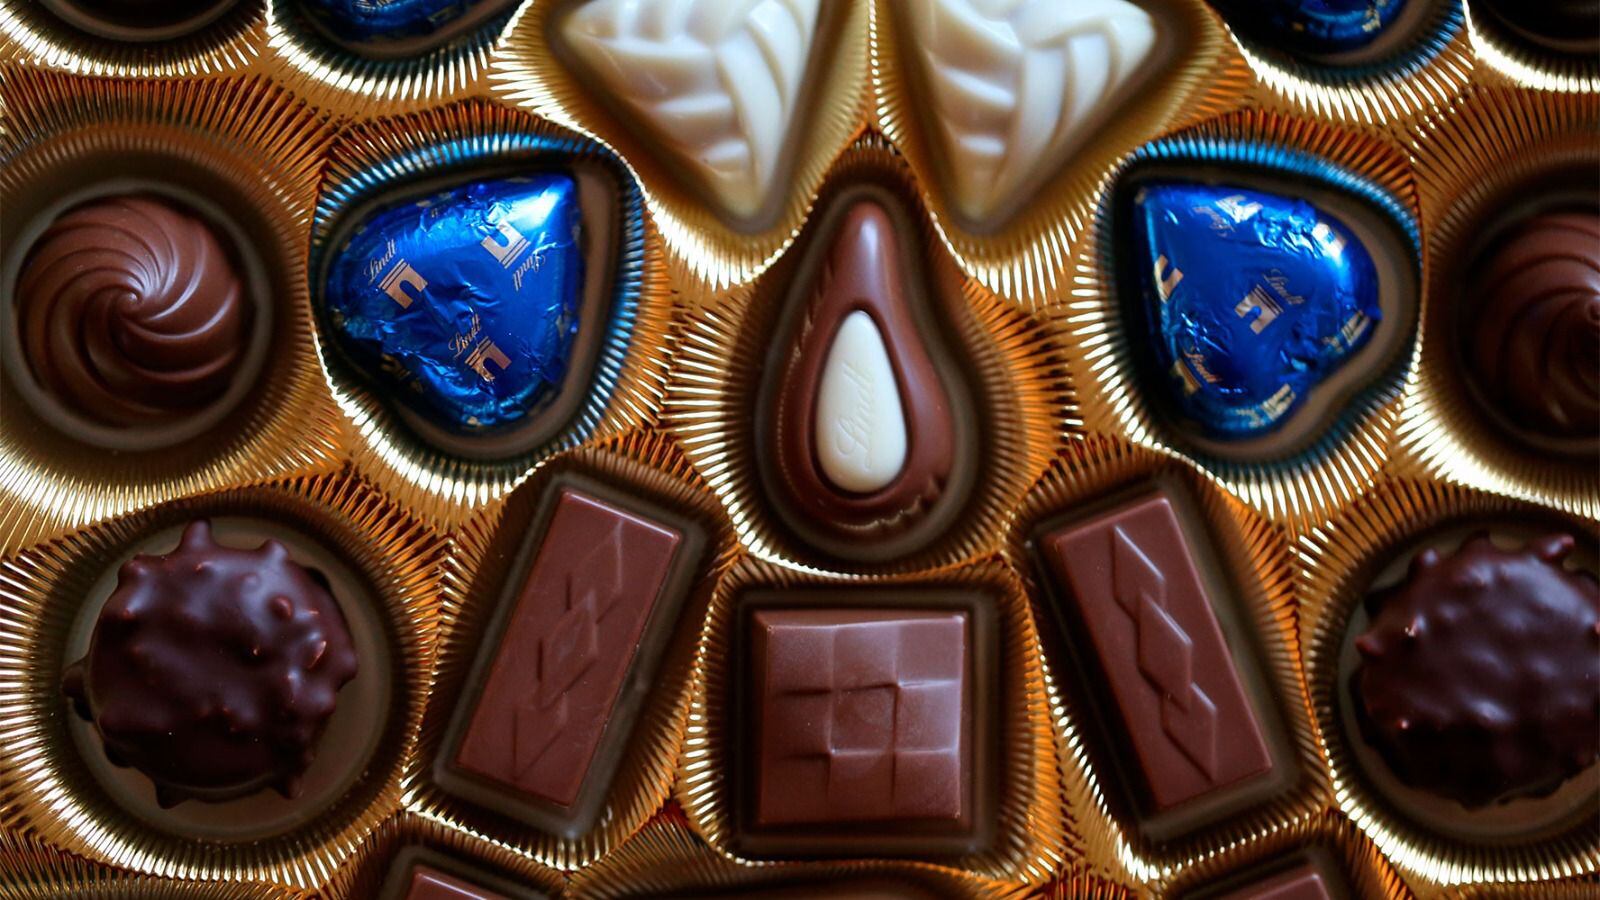 Crisis del cacao: ¿Por qué el mundo esta a punto de quedarse sin chocolate?